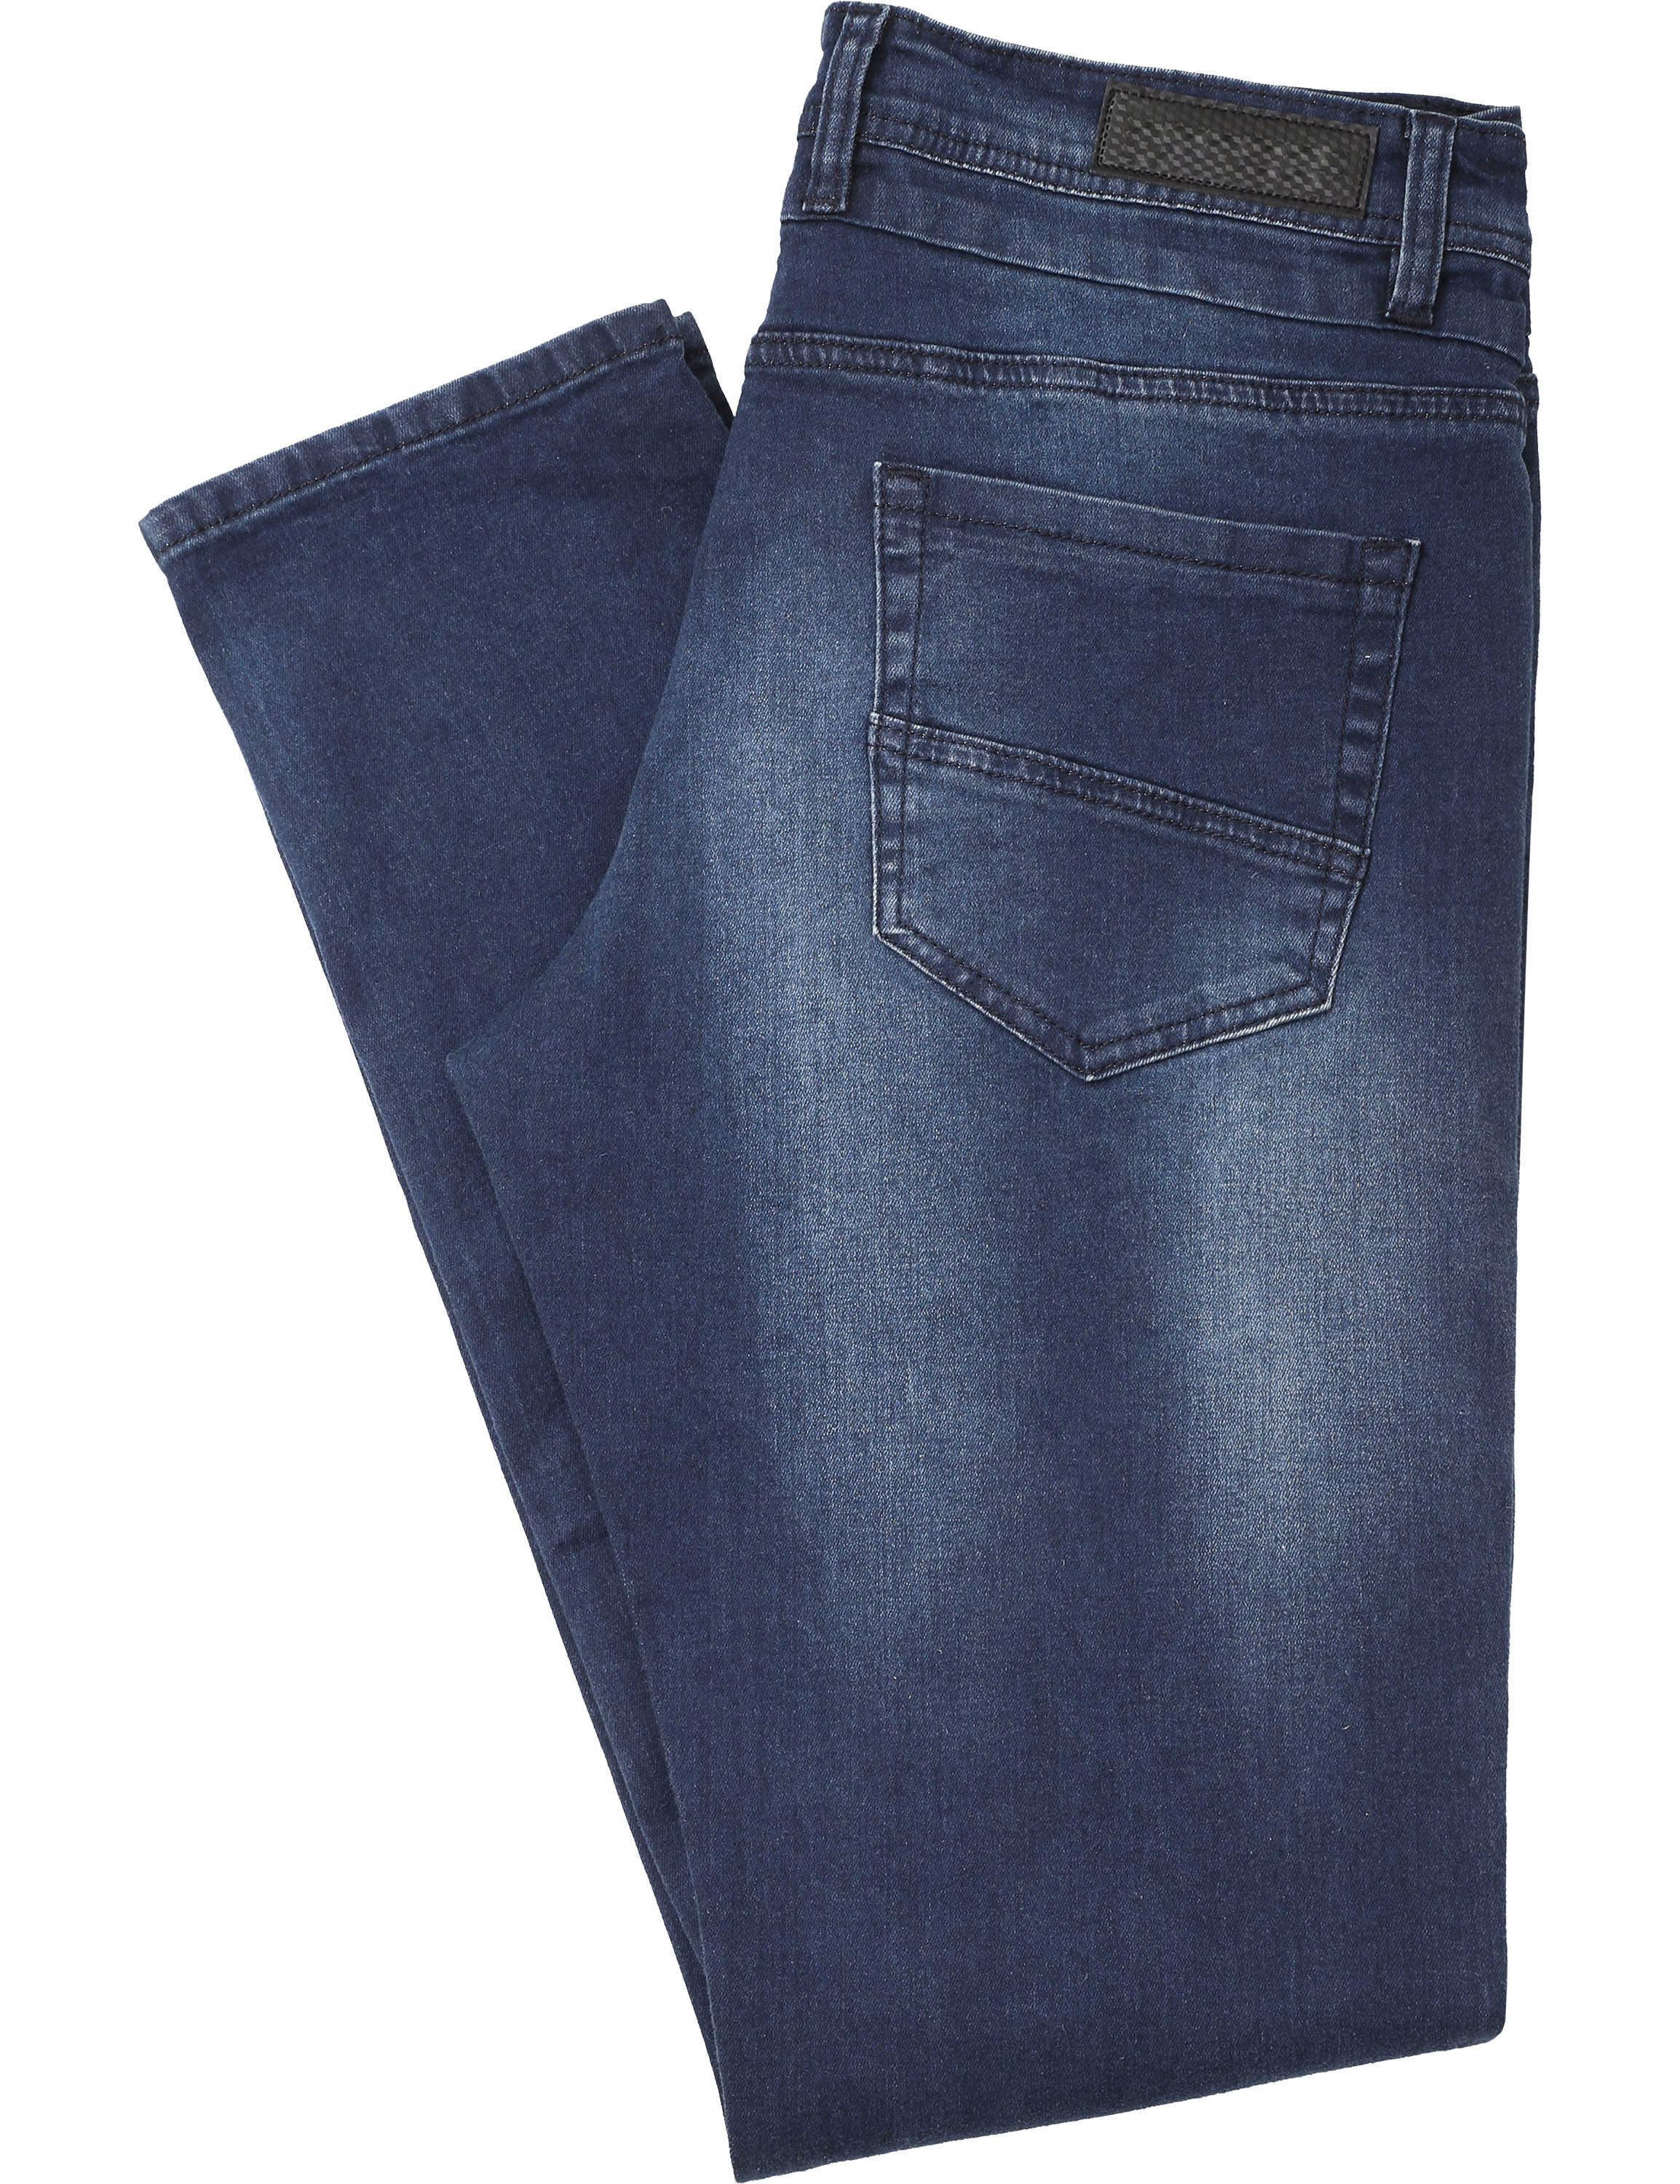 Mens Skinny Fit Denim Pants Jeans - image 2 of 2